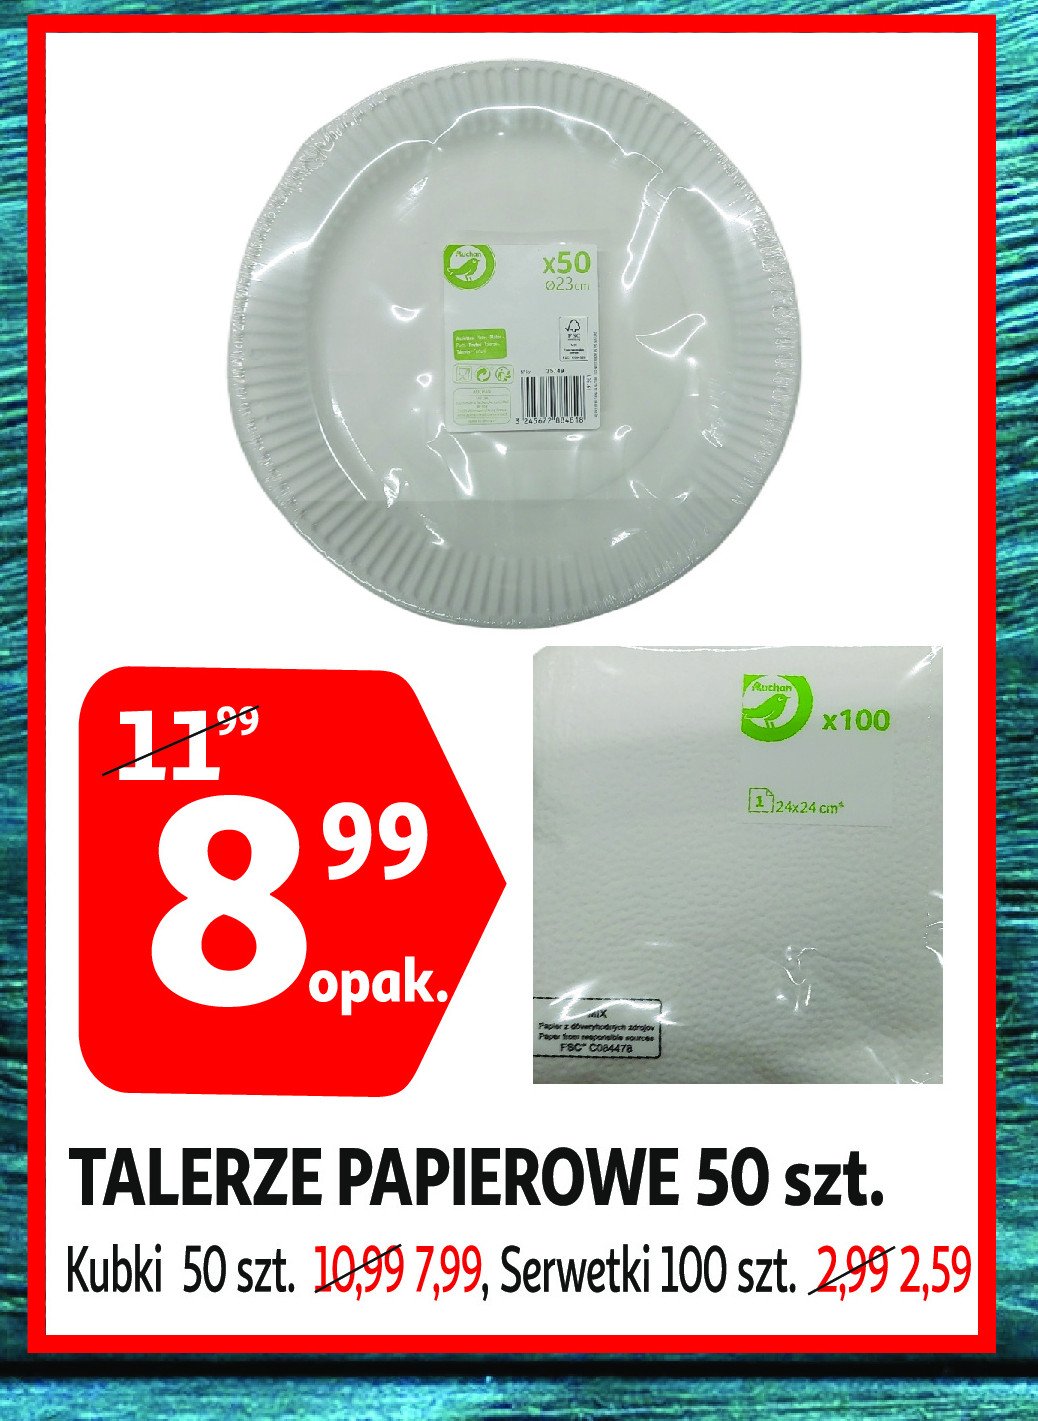 Talerze jednorazowe 23 cm Auchan na co dzień (logo zielone) promocja